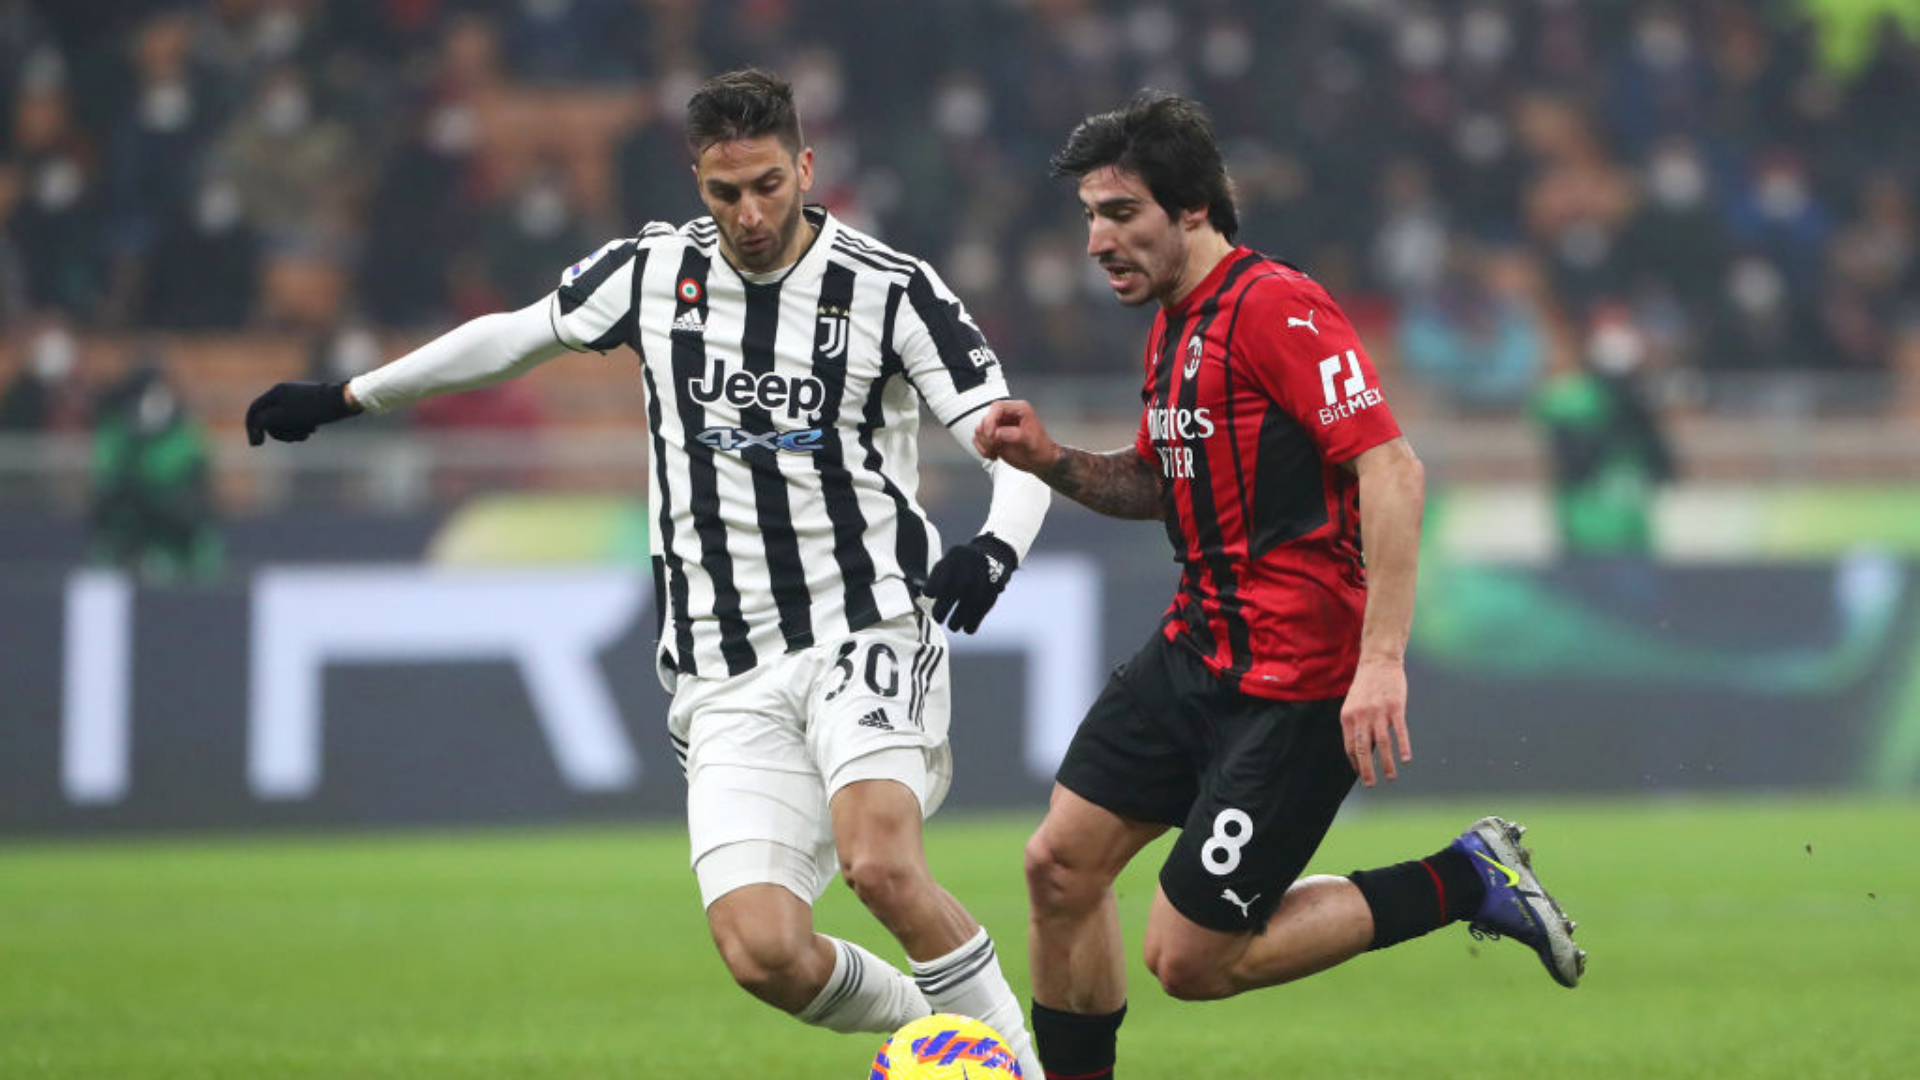 Jogadores disputam a bola no clássico entre Milan e Juventus